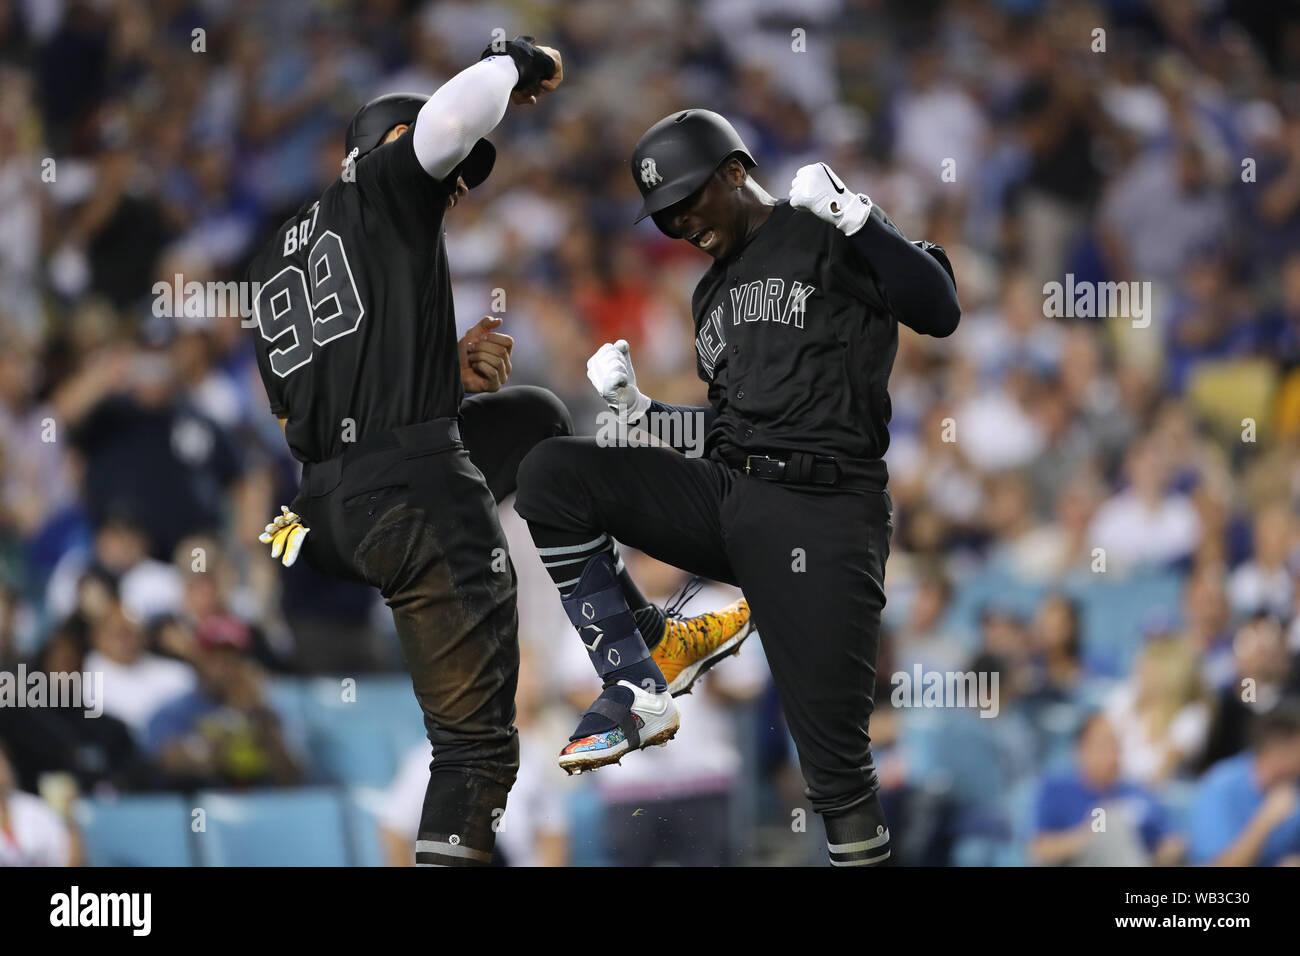 LOS ANGELES, CA - AUGUST 23: New York Yankees shortstop Didi